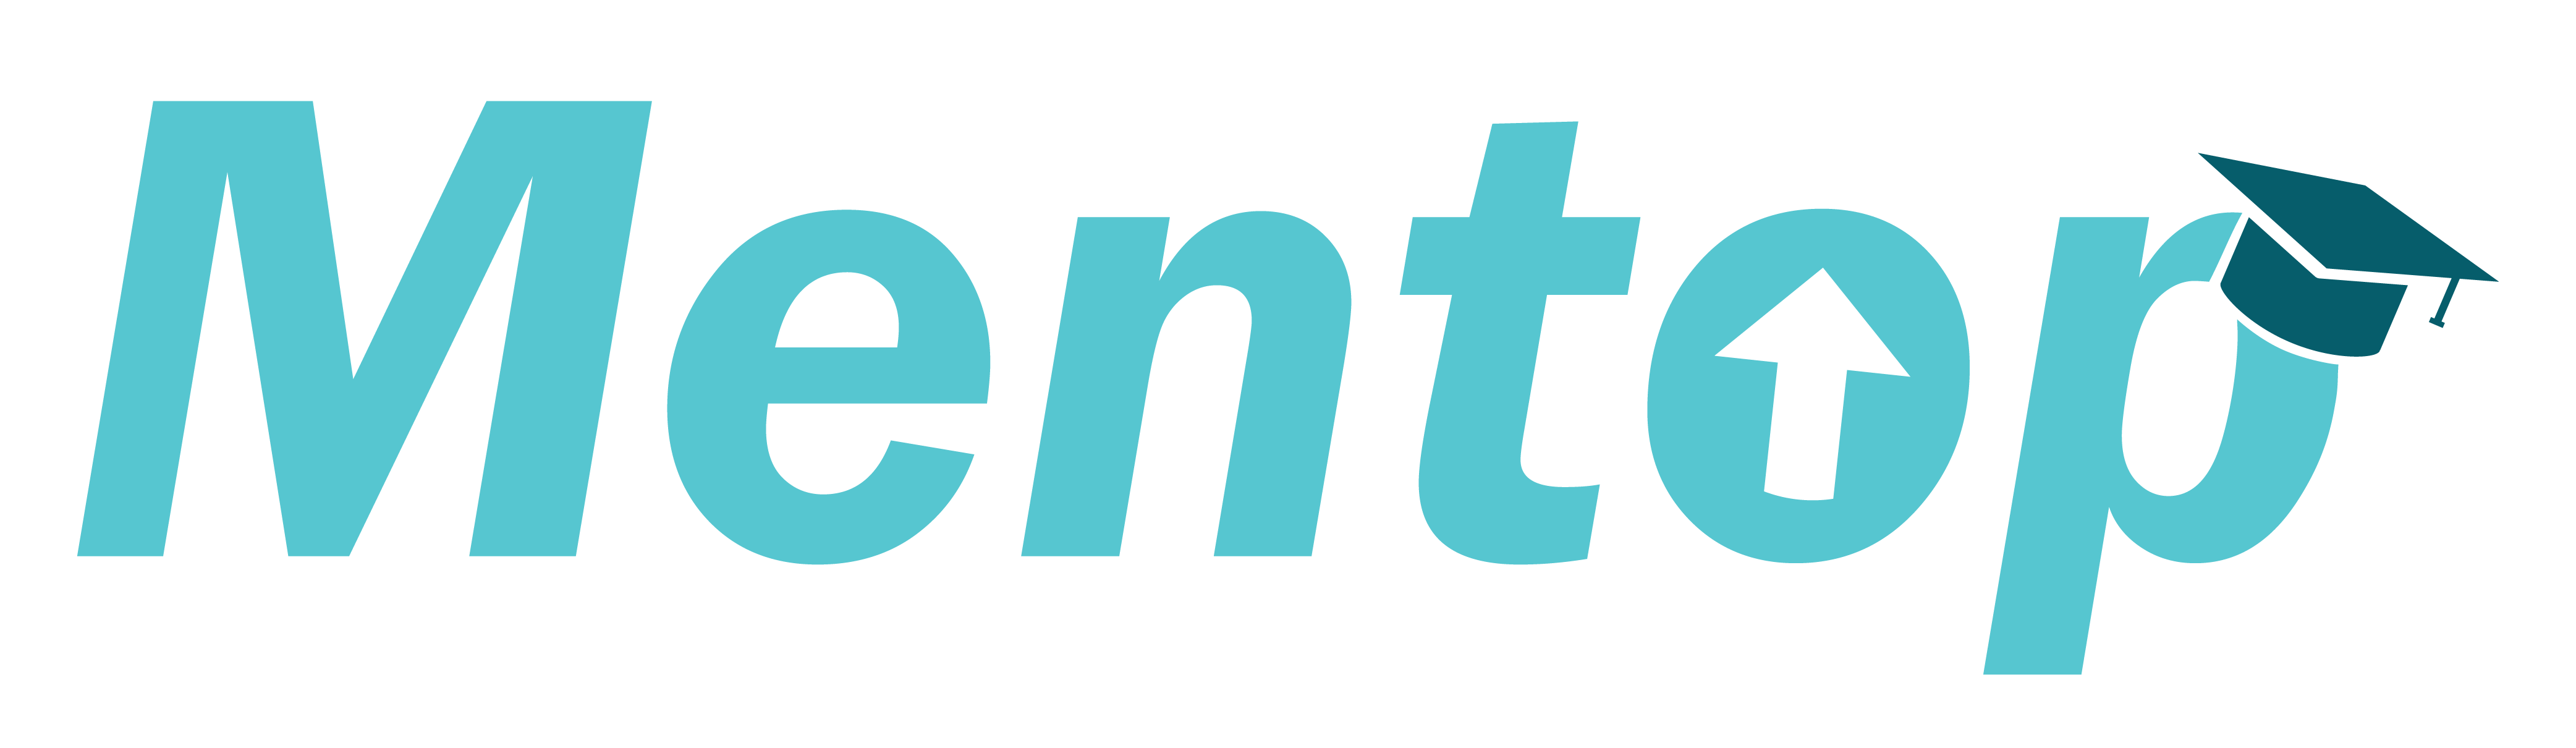 Mentop Logos 1 05